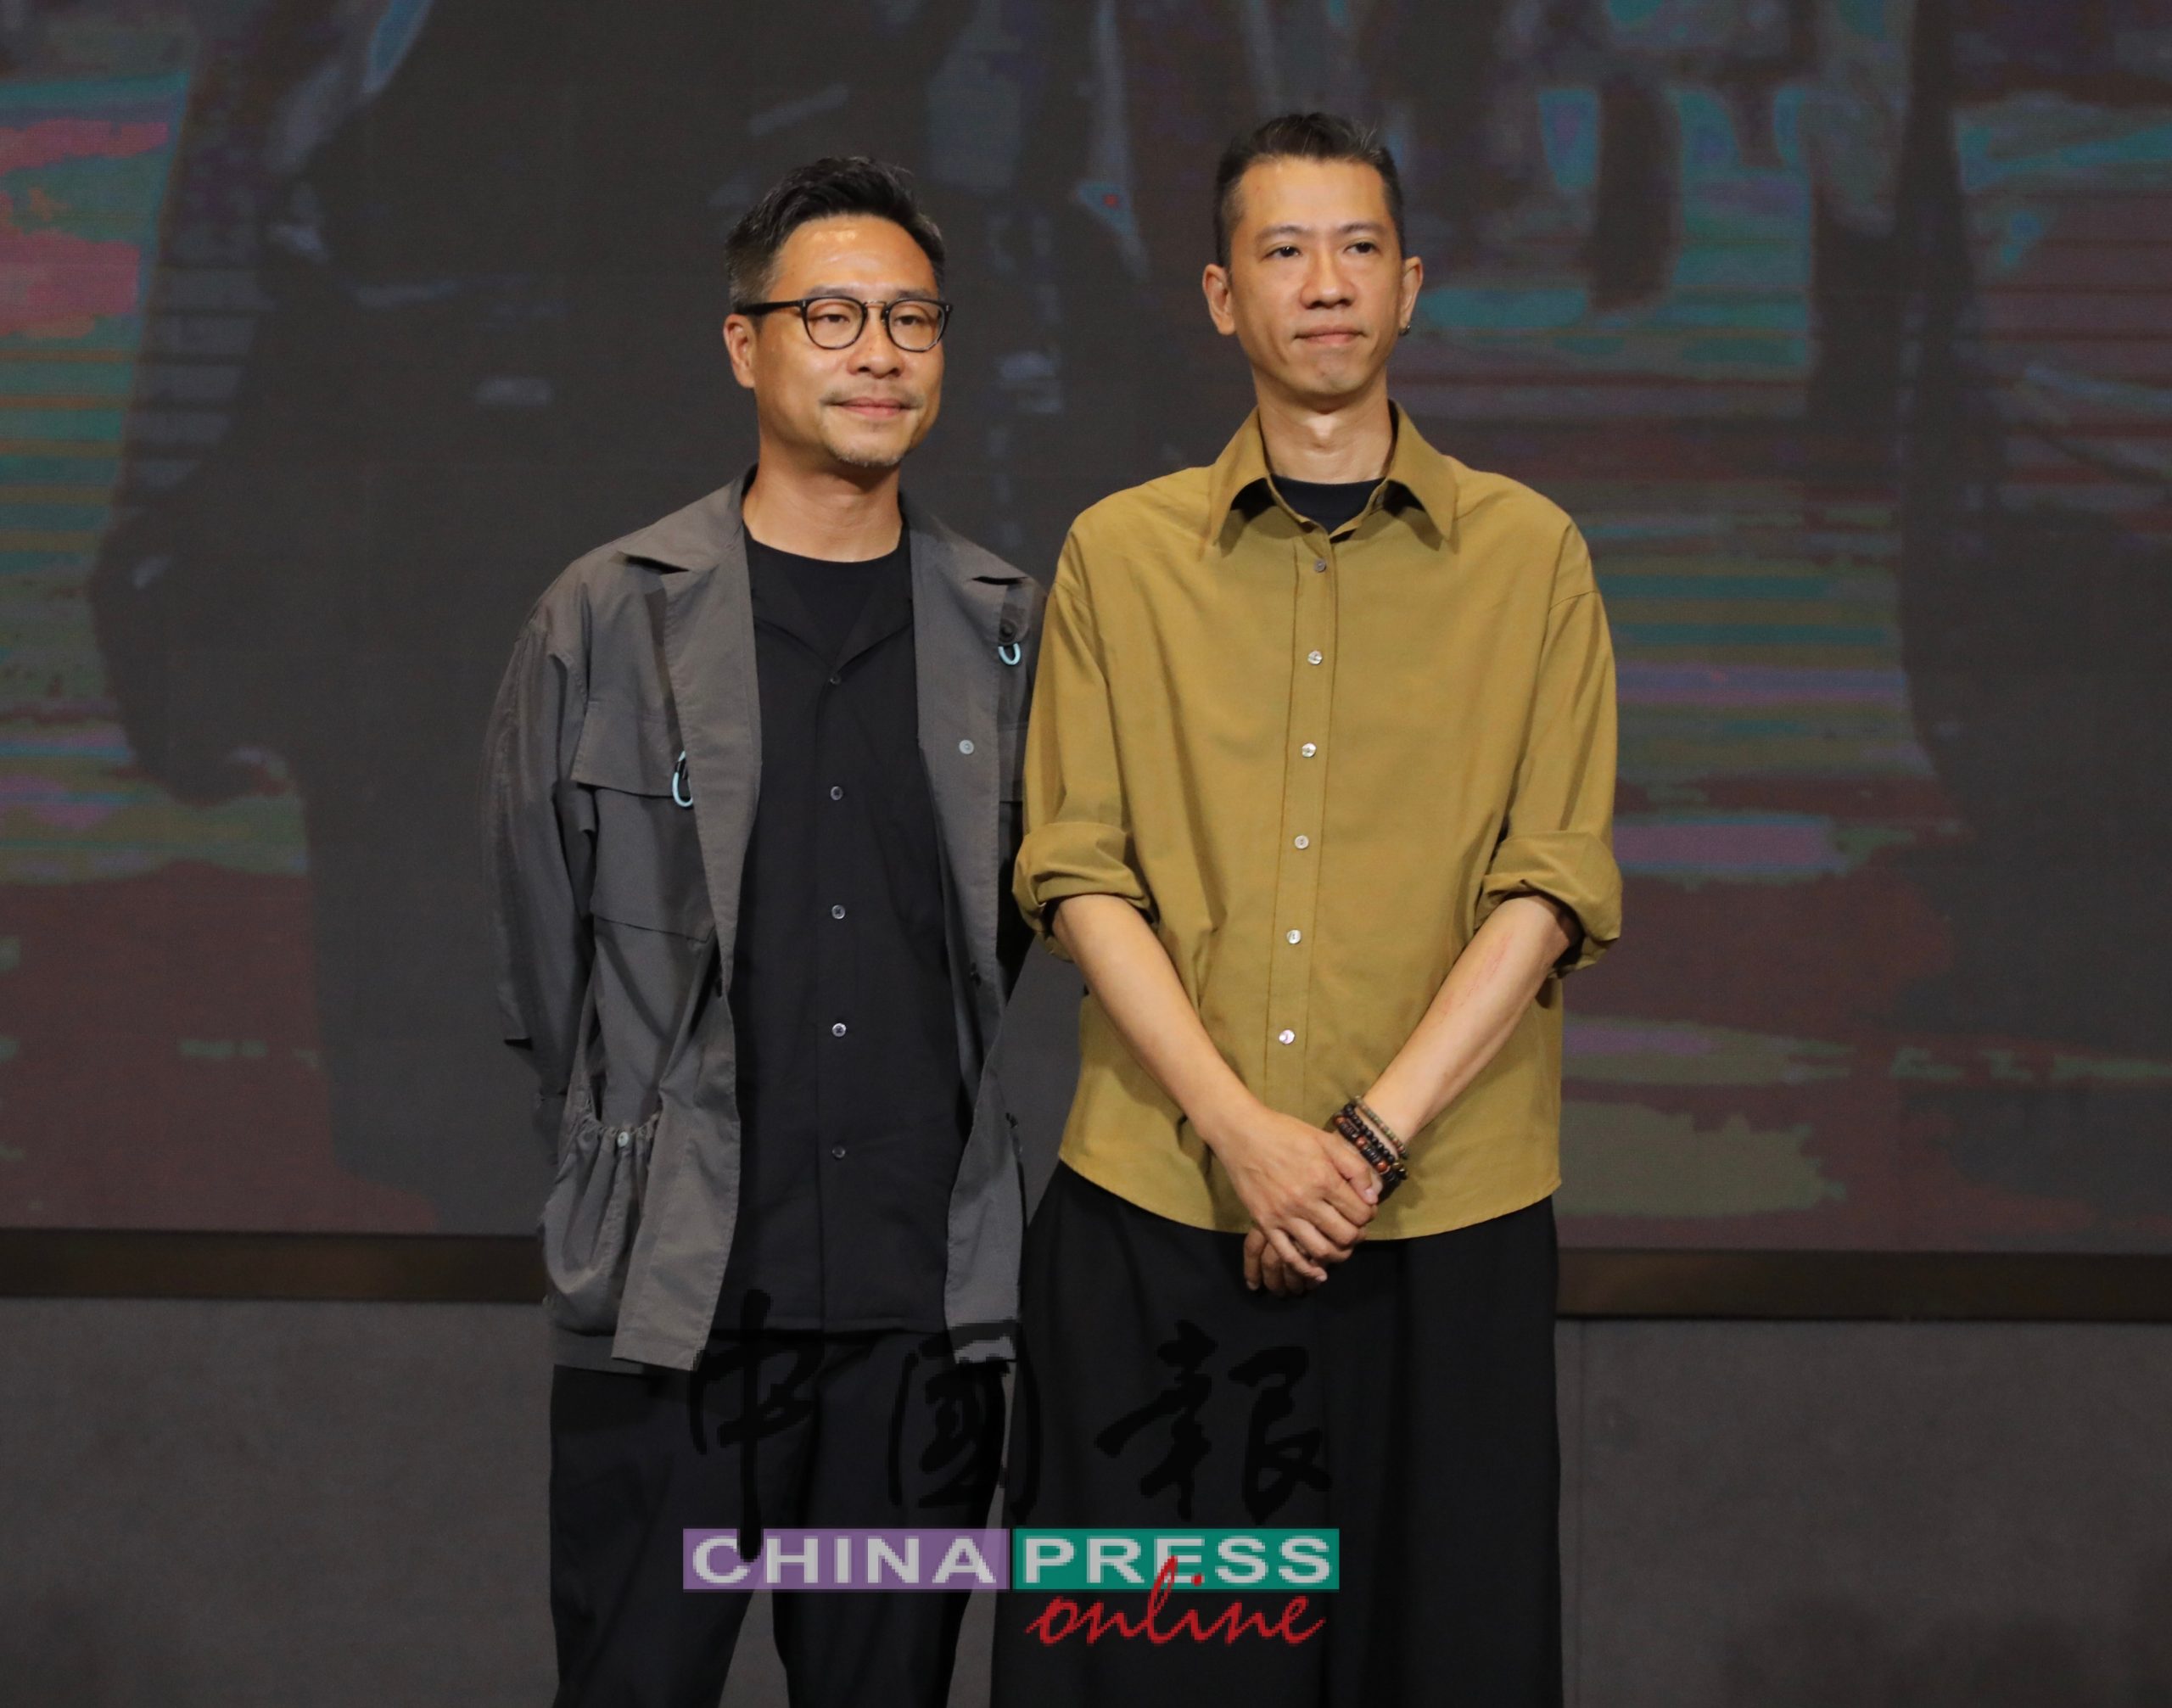 《尾随》由李子俊（左）与周汶儒共同执导，他们分别赞扬大马团队专业认真态度。